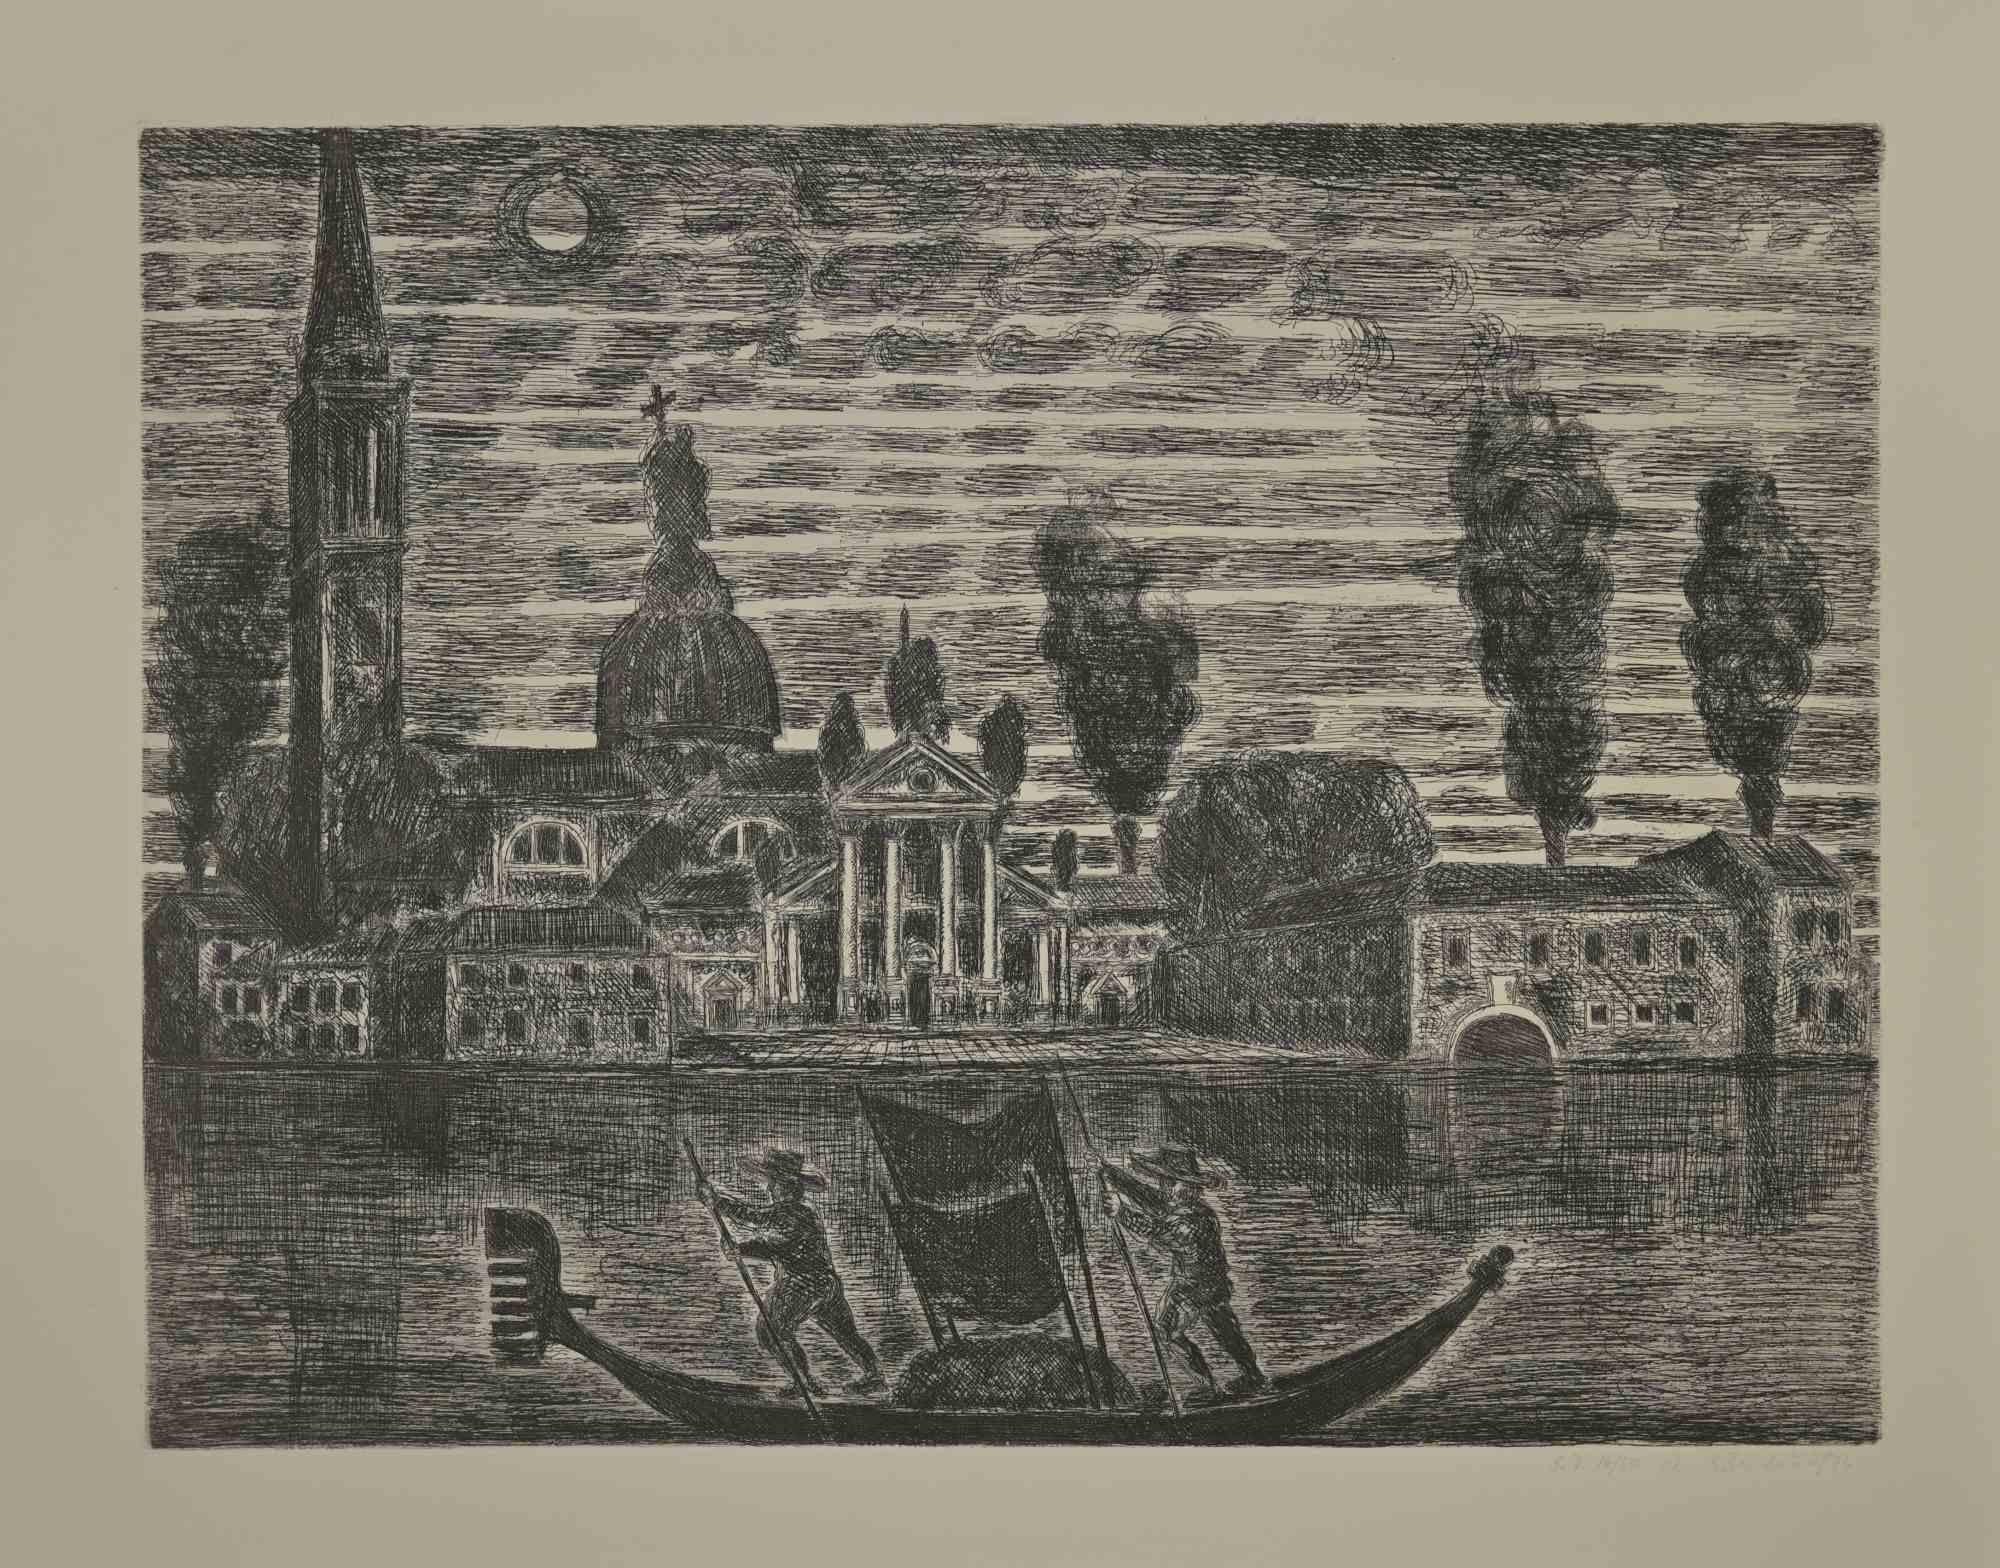 Gondoliere in Venedig ist eine Radierung von Gianpaolo Berto aus dem Jahr 1974.

60 X 75 cm, ohne Rahmen.

Ausgabe 14/50. Am unteren Rand nummeriert und vom Künstler signiert.

Gute Bedingungen.

